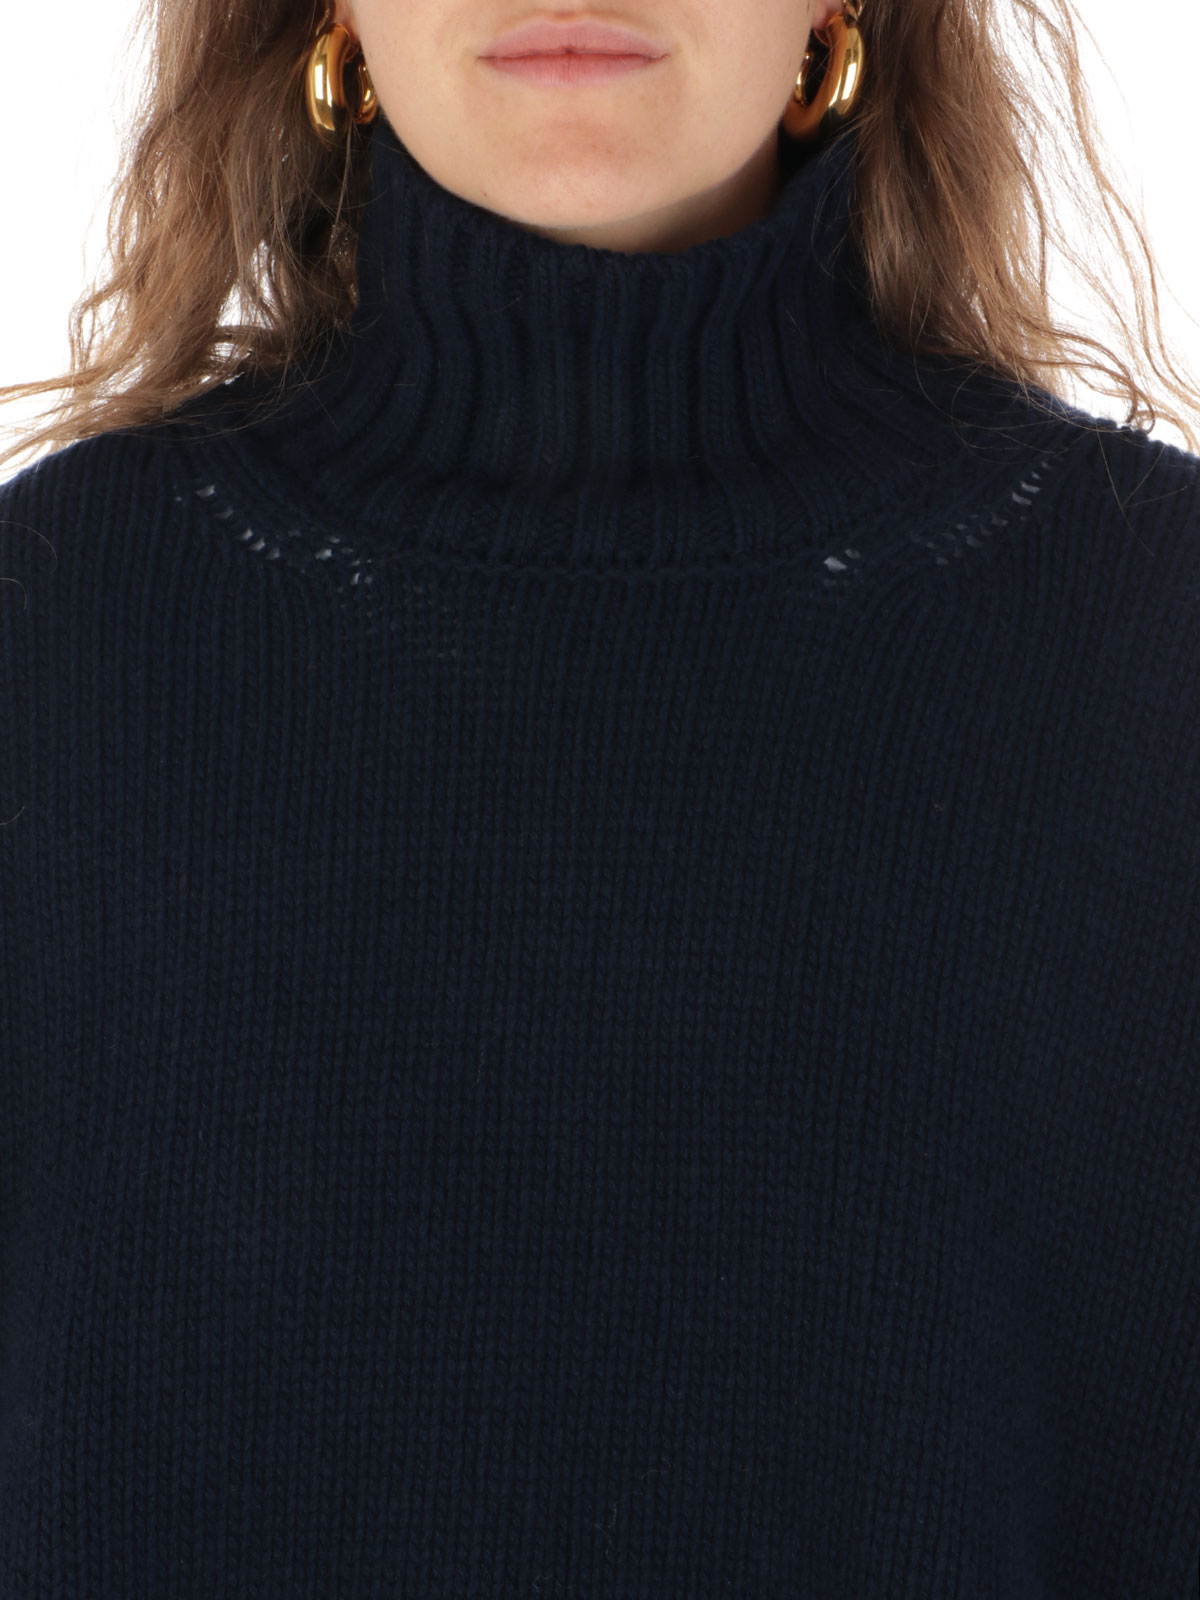 Picture of WOOLRICH | Women's Virgin Wool Turtleneck Sweater